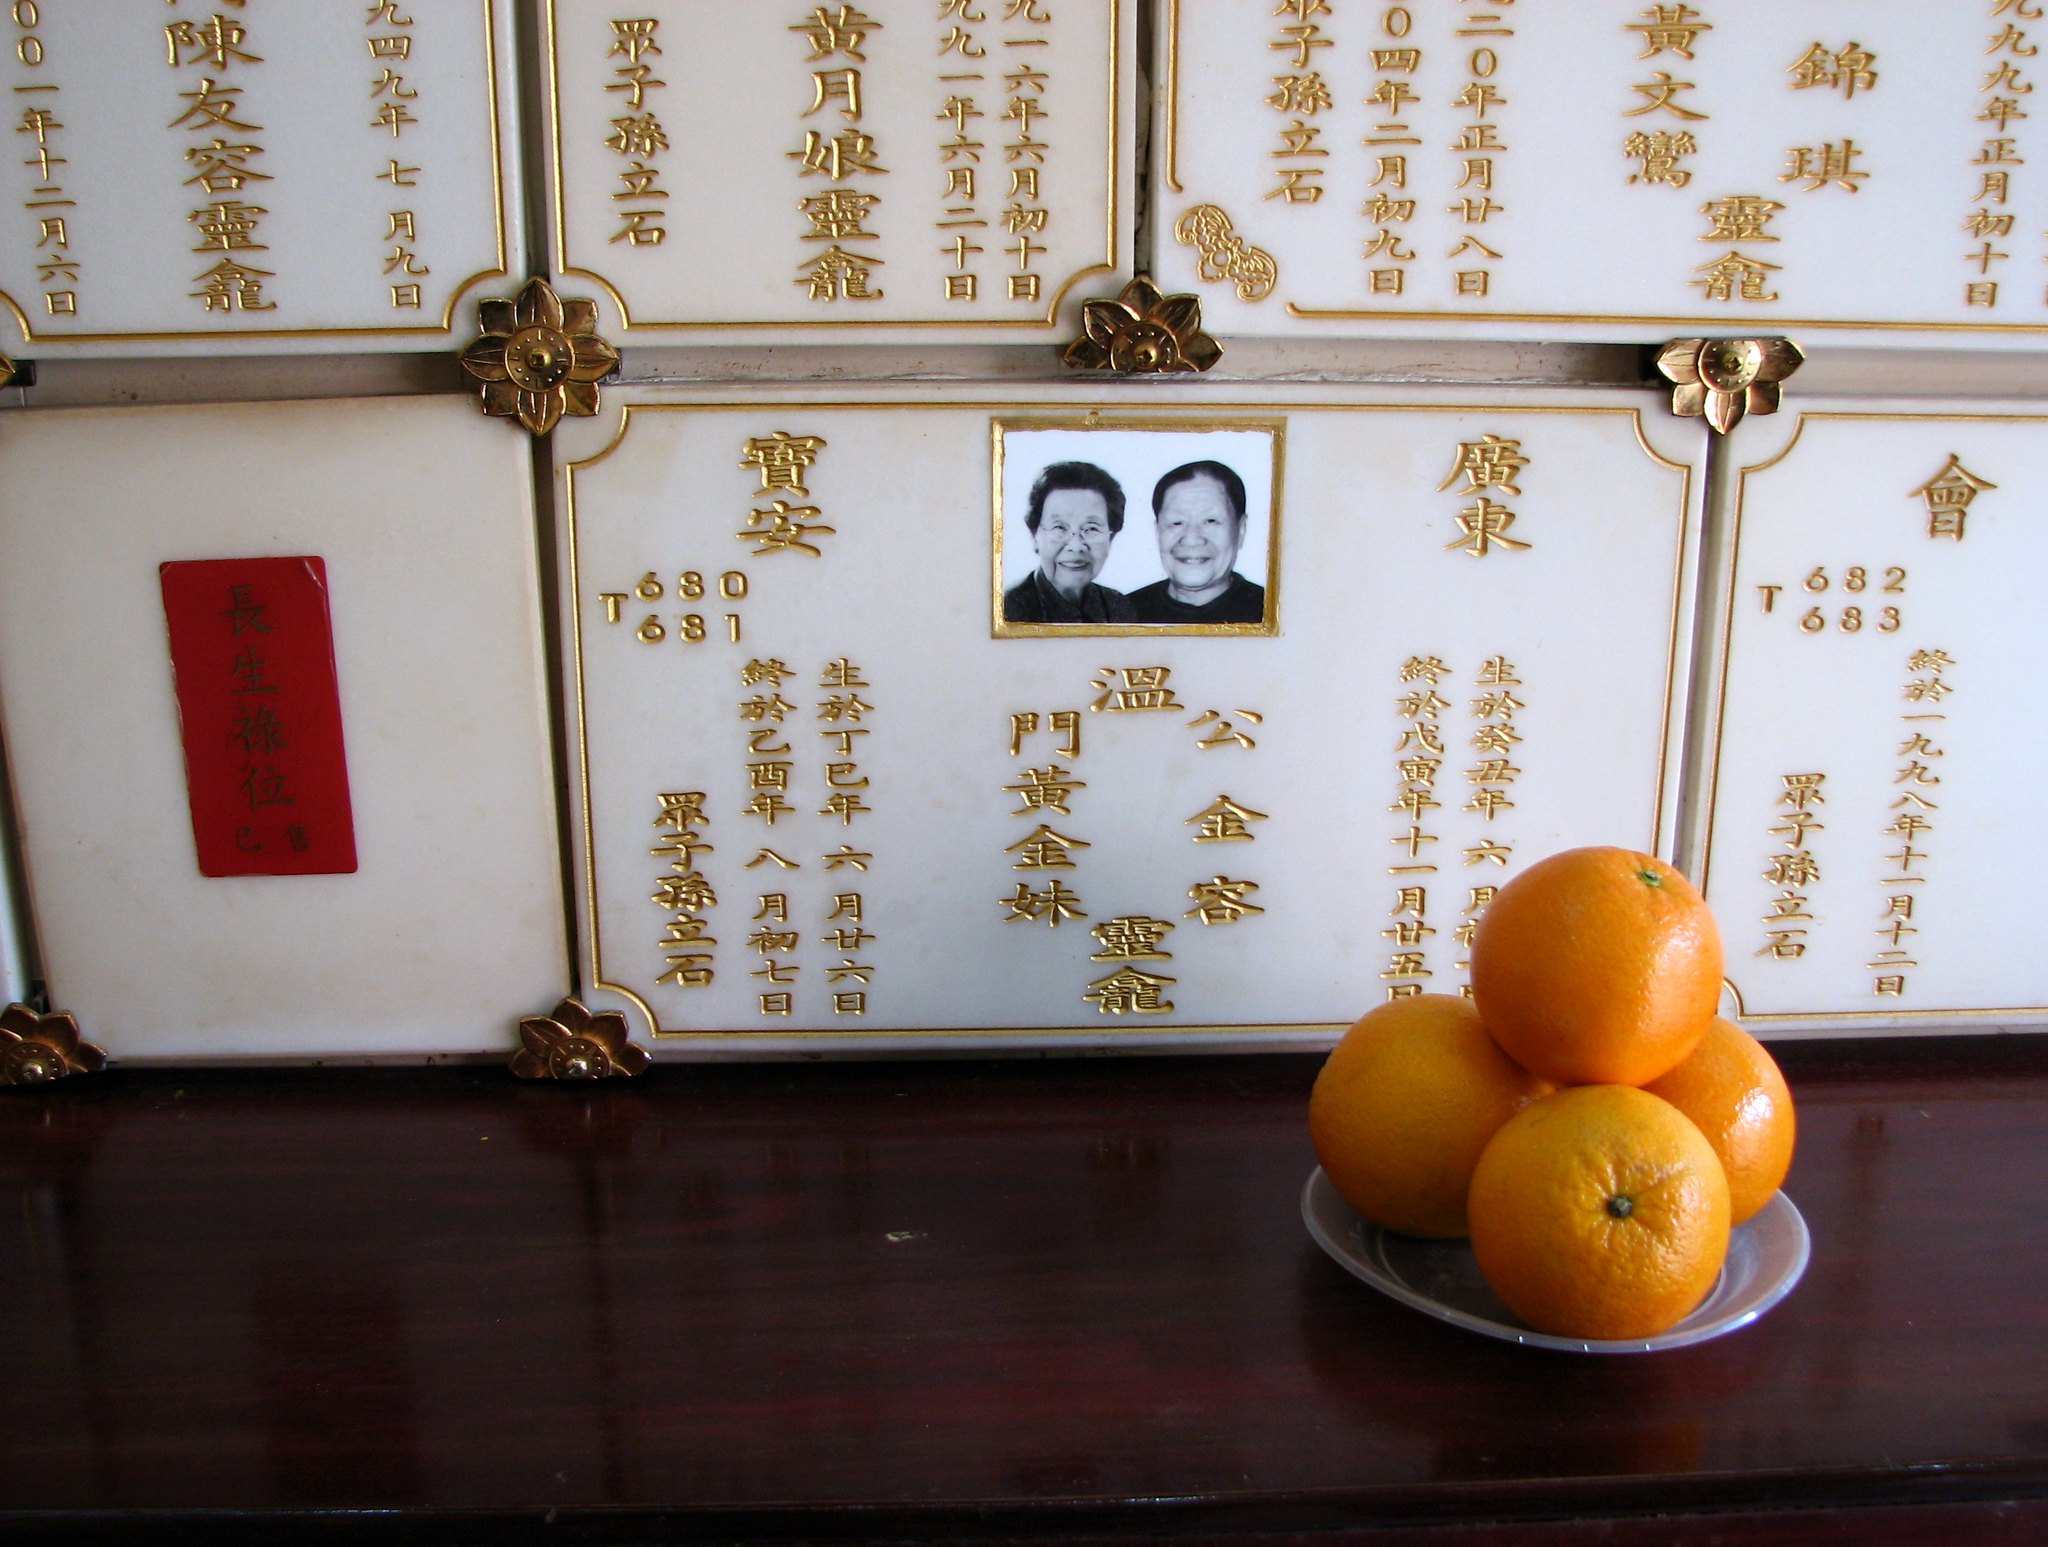 КНР отказывается от традиционных захоронений в пользу цифровых кладбищ. Как они устроены